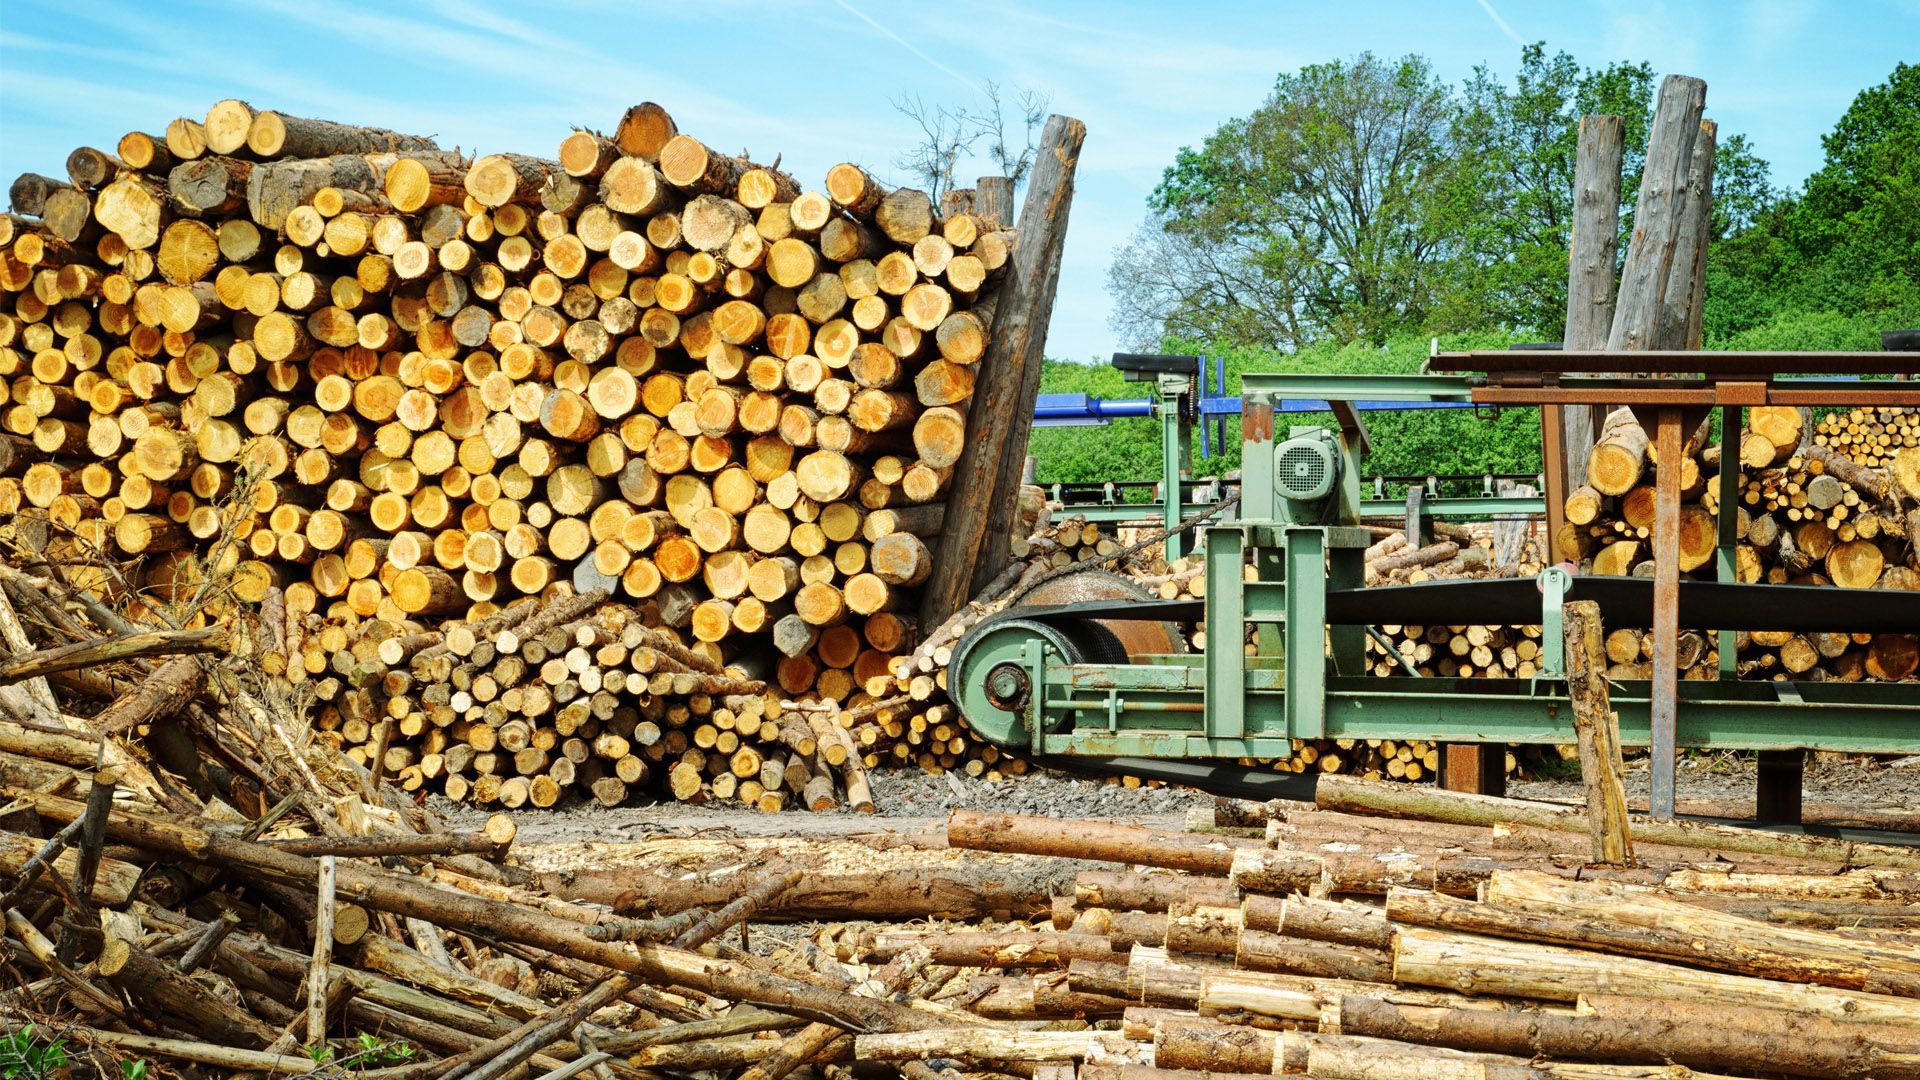 Ми не повинні сліпо виконувати вимоги Євросоюзу щодо експорту деревини, – Борейко